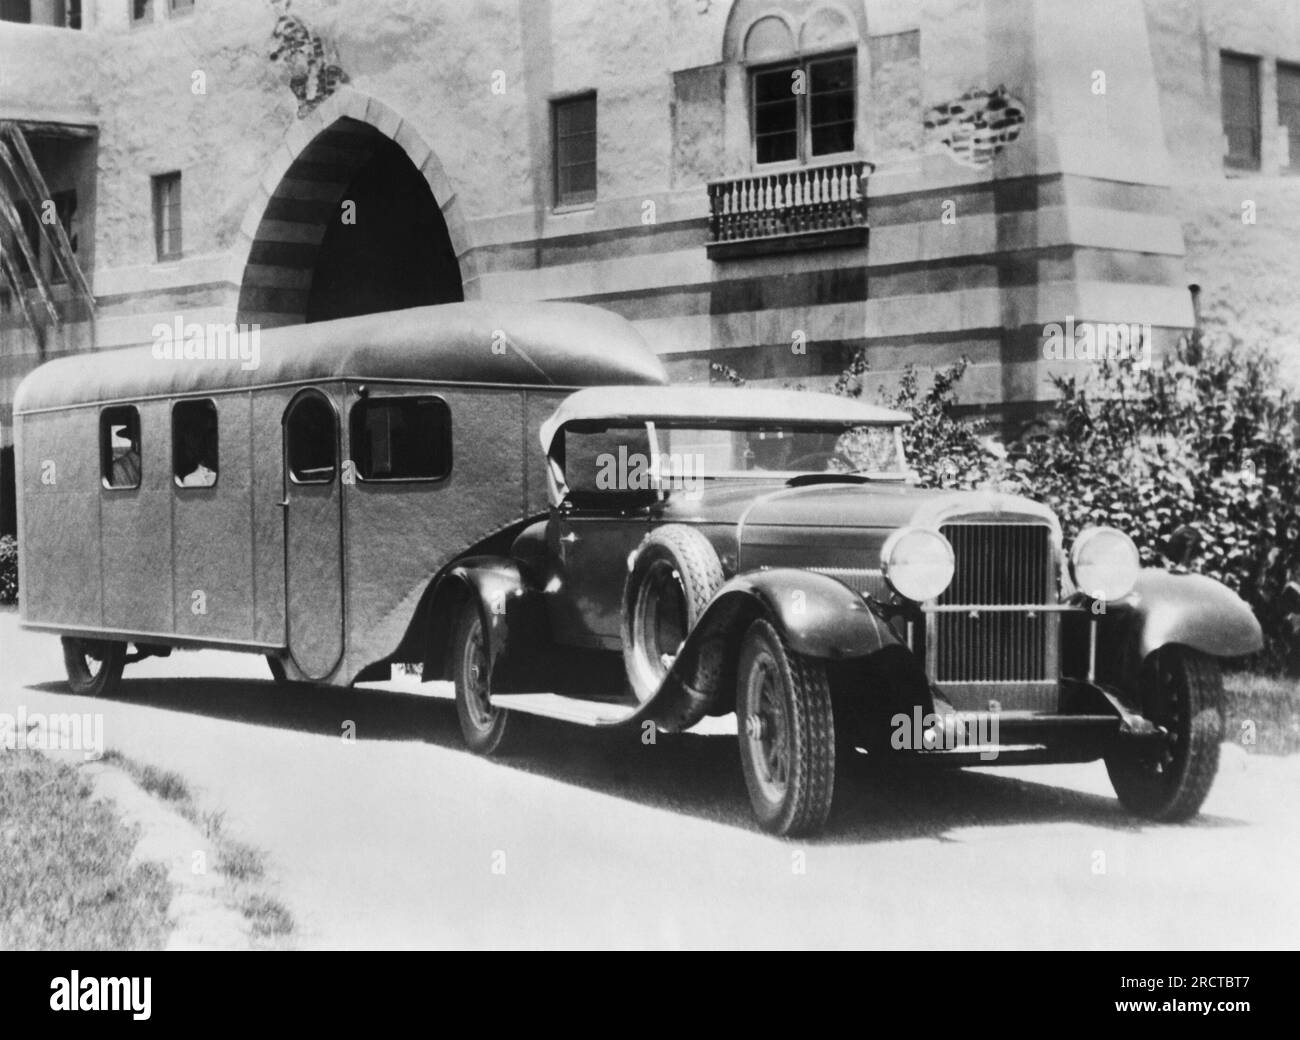 OPA Locka, Floride : c. 1929 la dernière en date dans les bandes-annonces, le Curtis Aerocar, qui tentera d'établir un nouveau record de vitesse pour les voyages entre OPA Locka et New York City. Banque D'Images